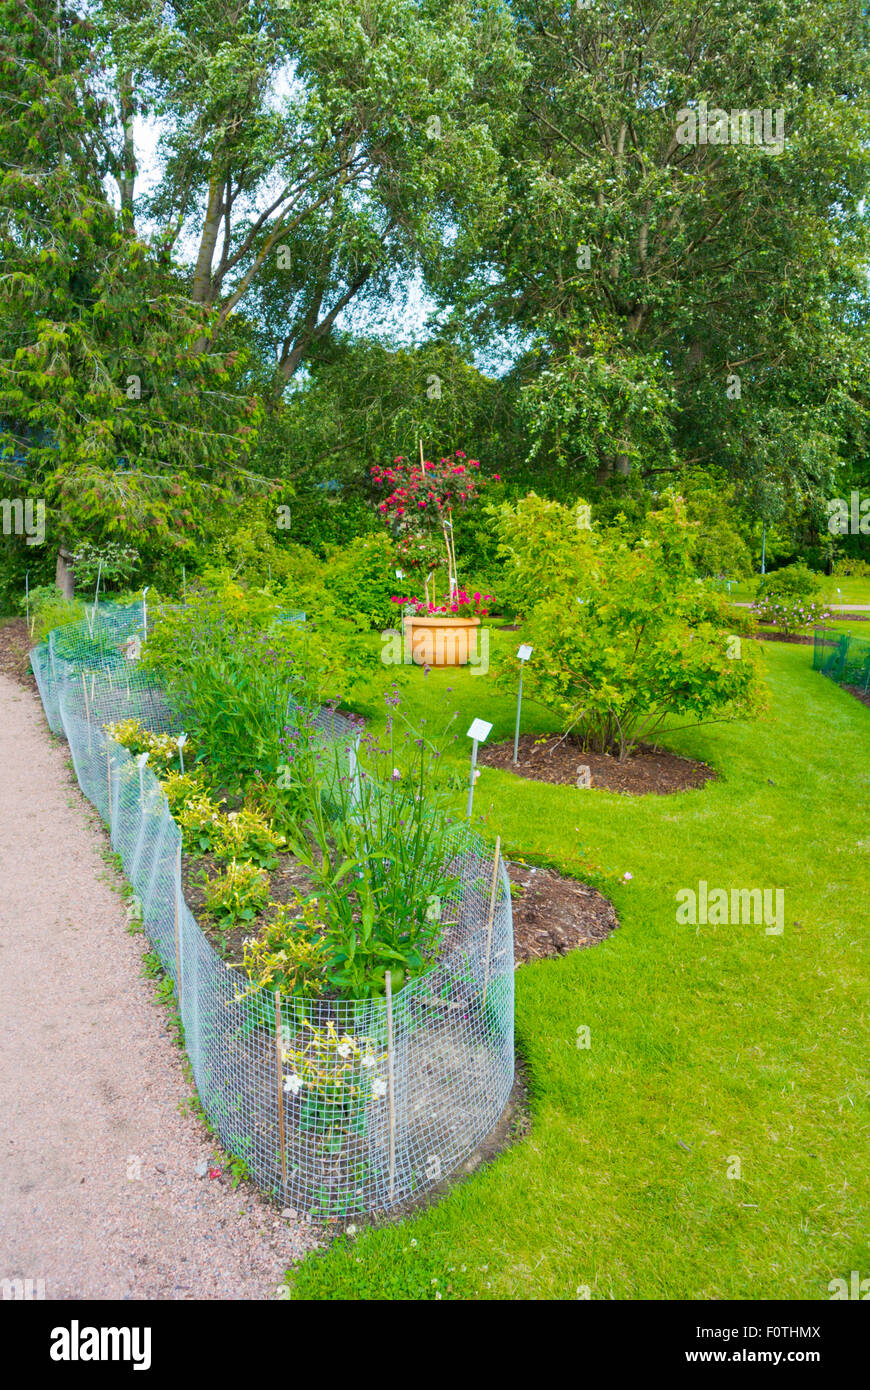 Botanical gardens, Kasvitieteellinen puutarha, Kaisaniemen puisto, Kaisaniemi park, Helsinki, Finland, Europe Stock Photo